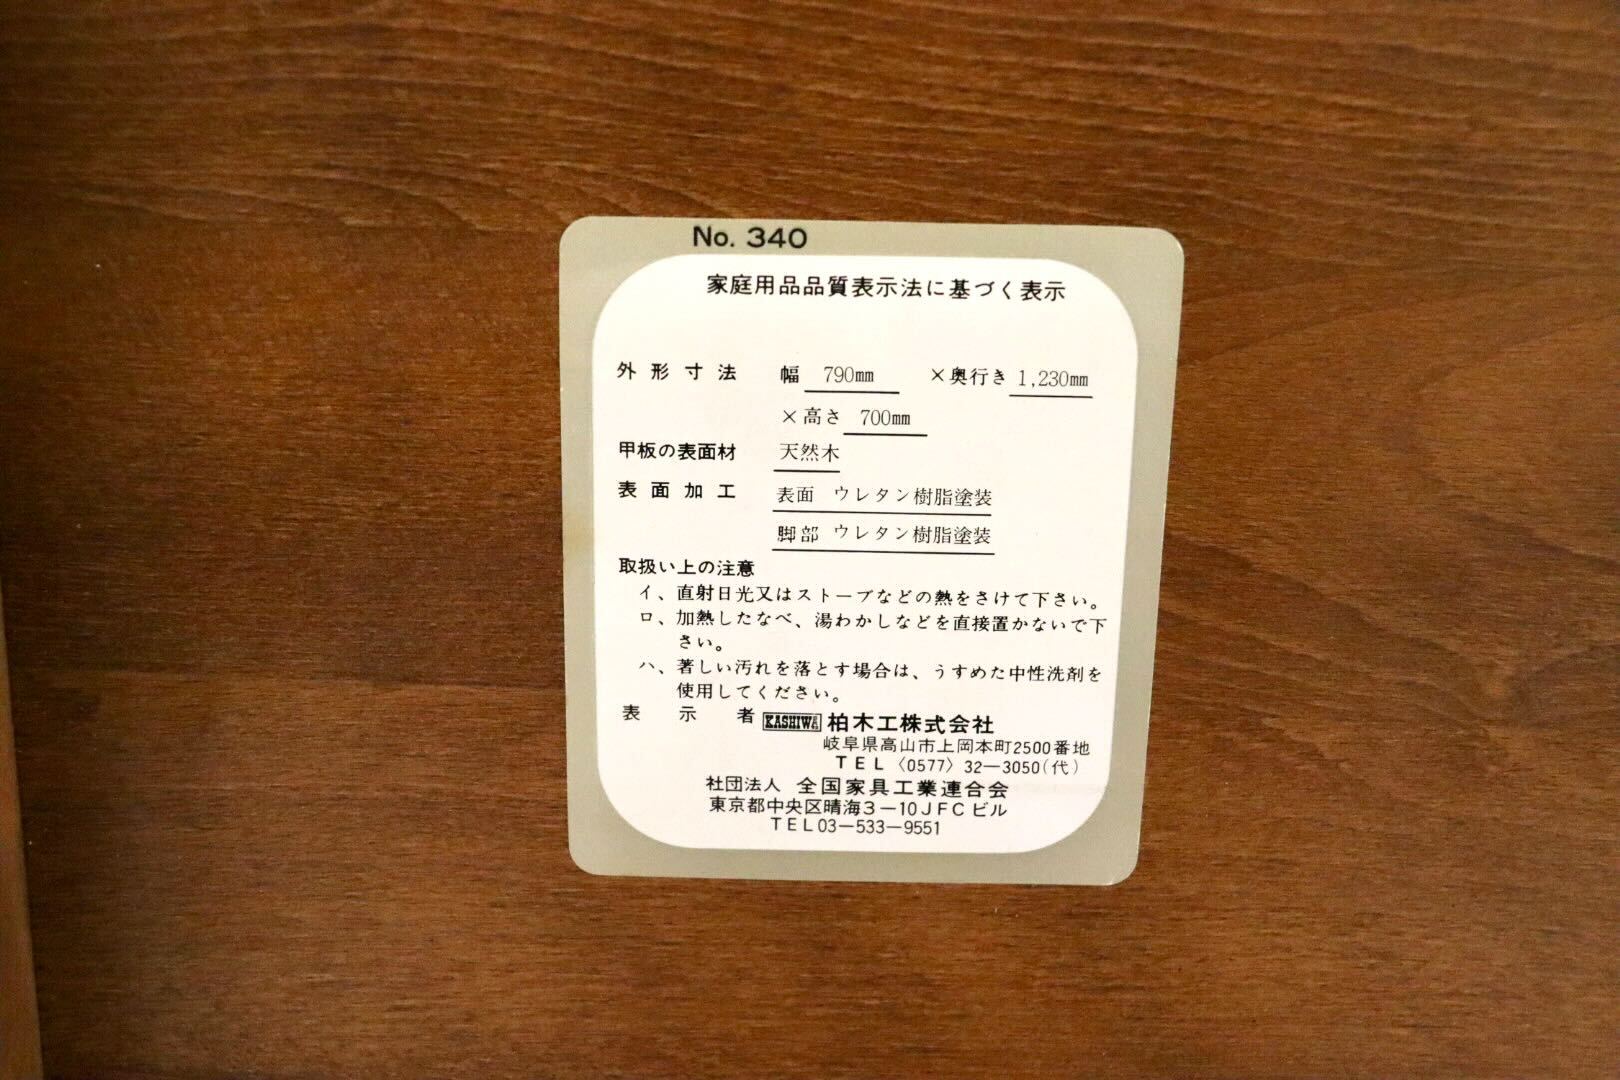 GMGT158○柏木工 / KASHIWA ダイニングテーブル 食卓テーブル 作業台 机 テーブル カントリー モダン